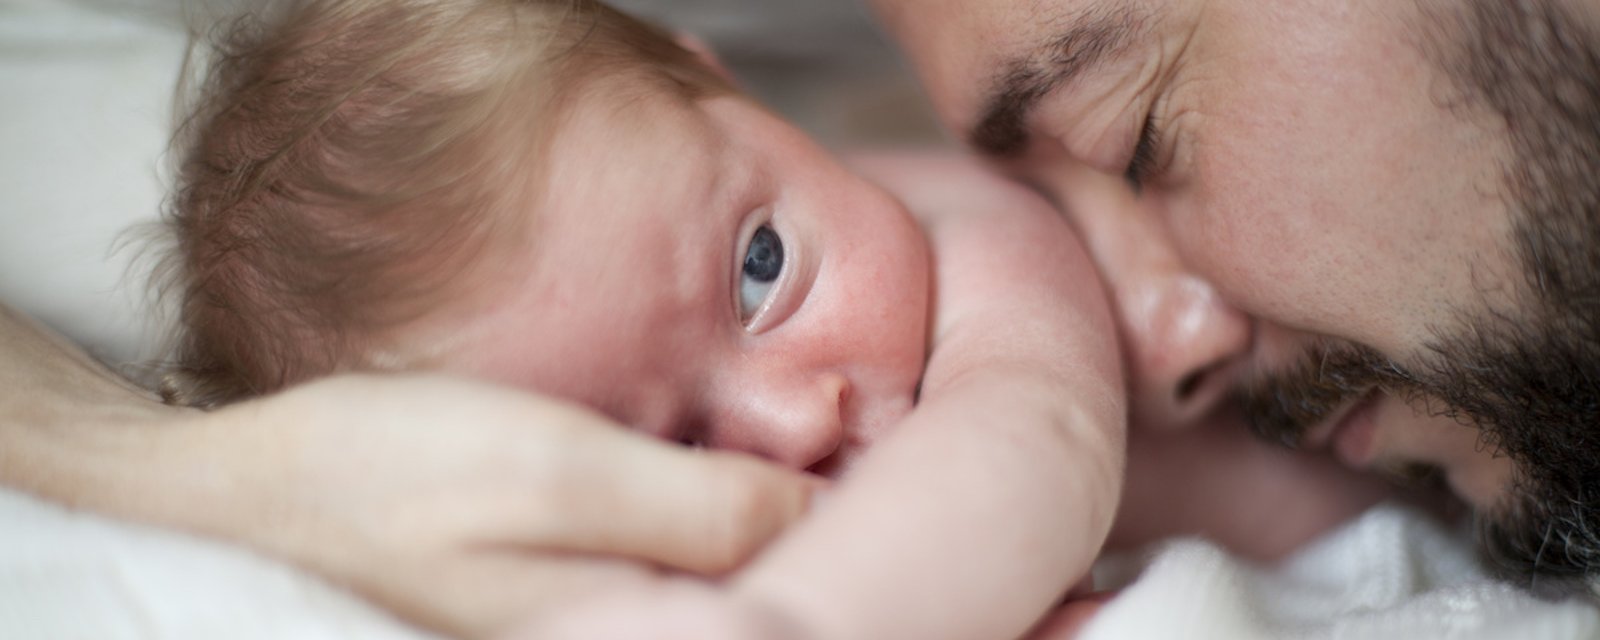 La science le confirme: câliner un bébé n'a que des bénéfices